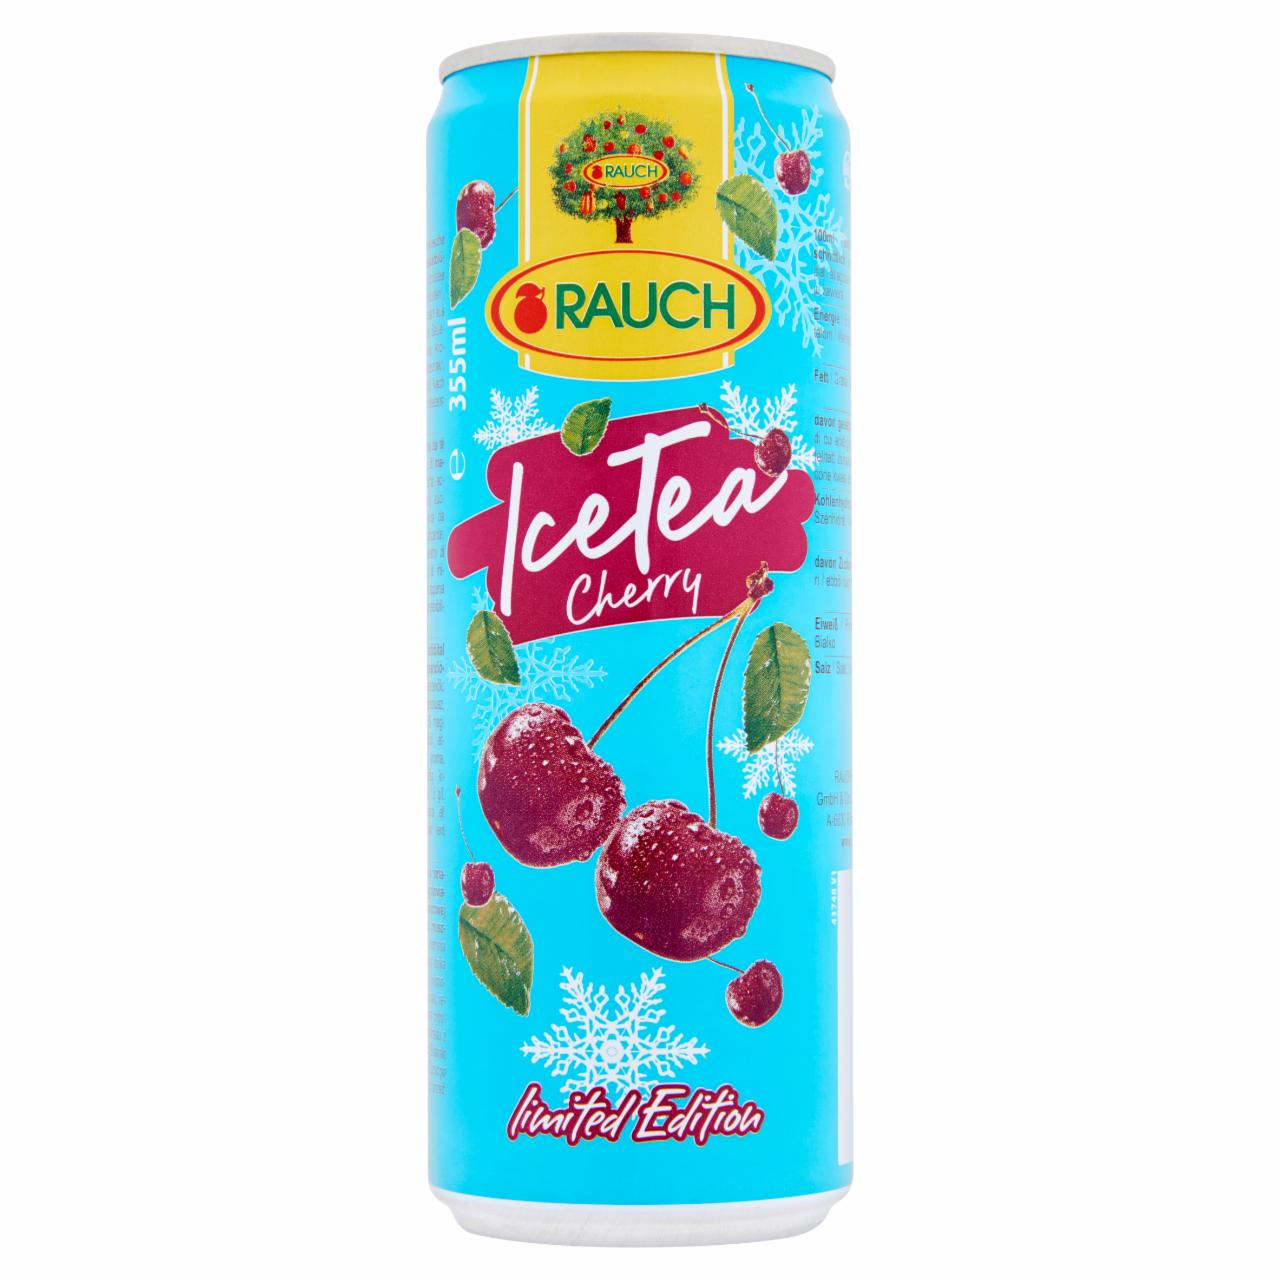 Képek - Rauch Ice Tea meggyes üdítőital gyümölcsteából, szerecsendióvirág kivonattal 355 ml